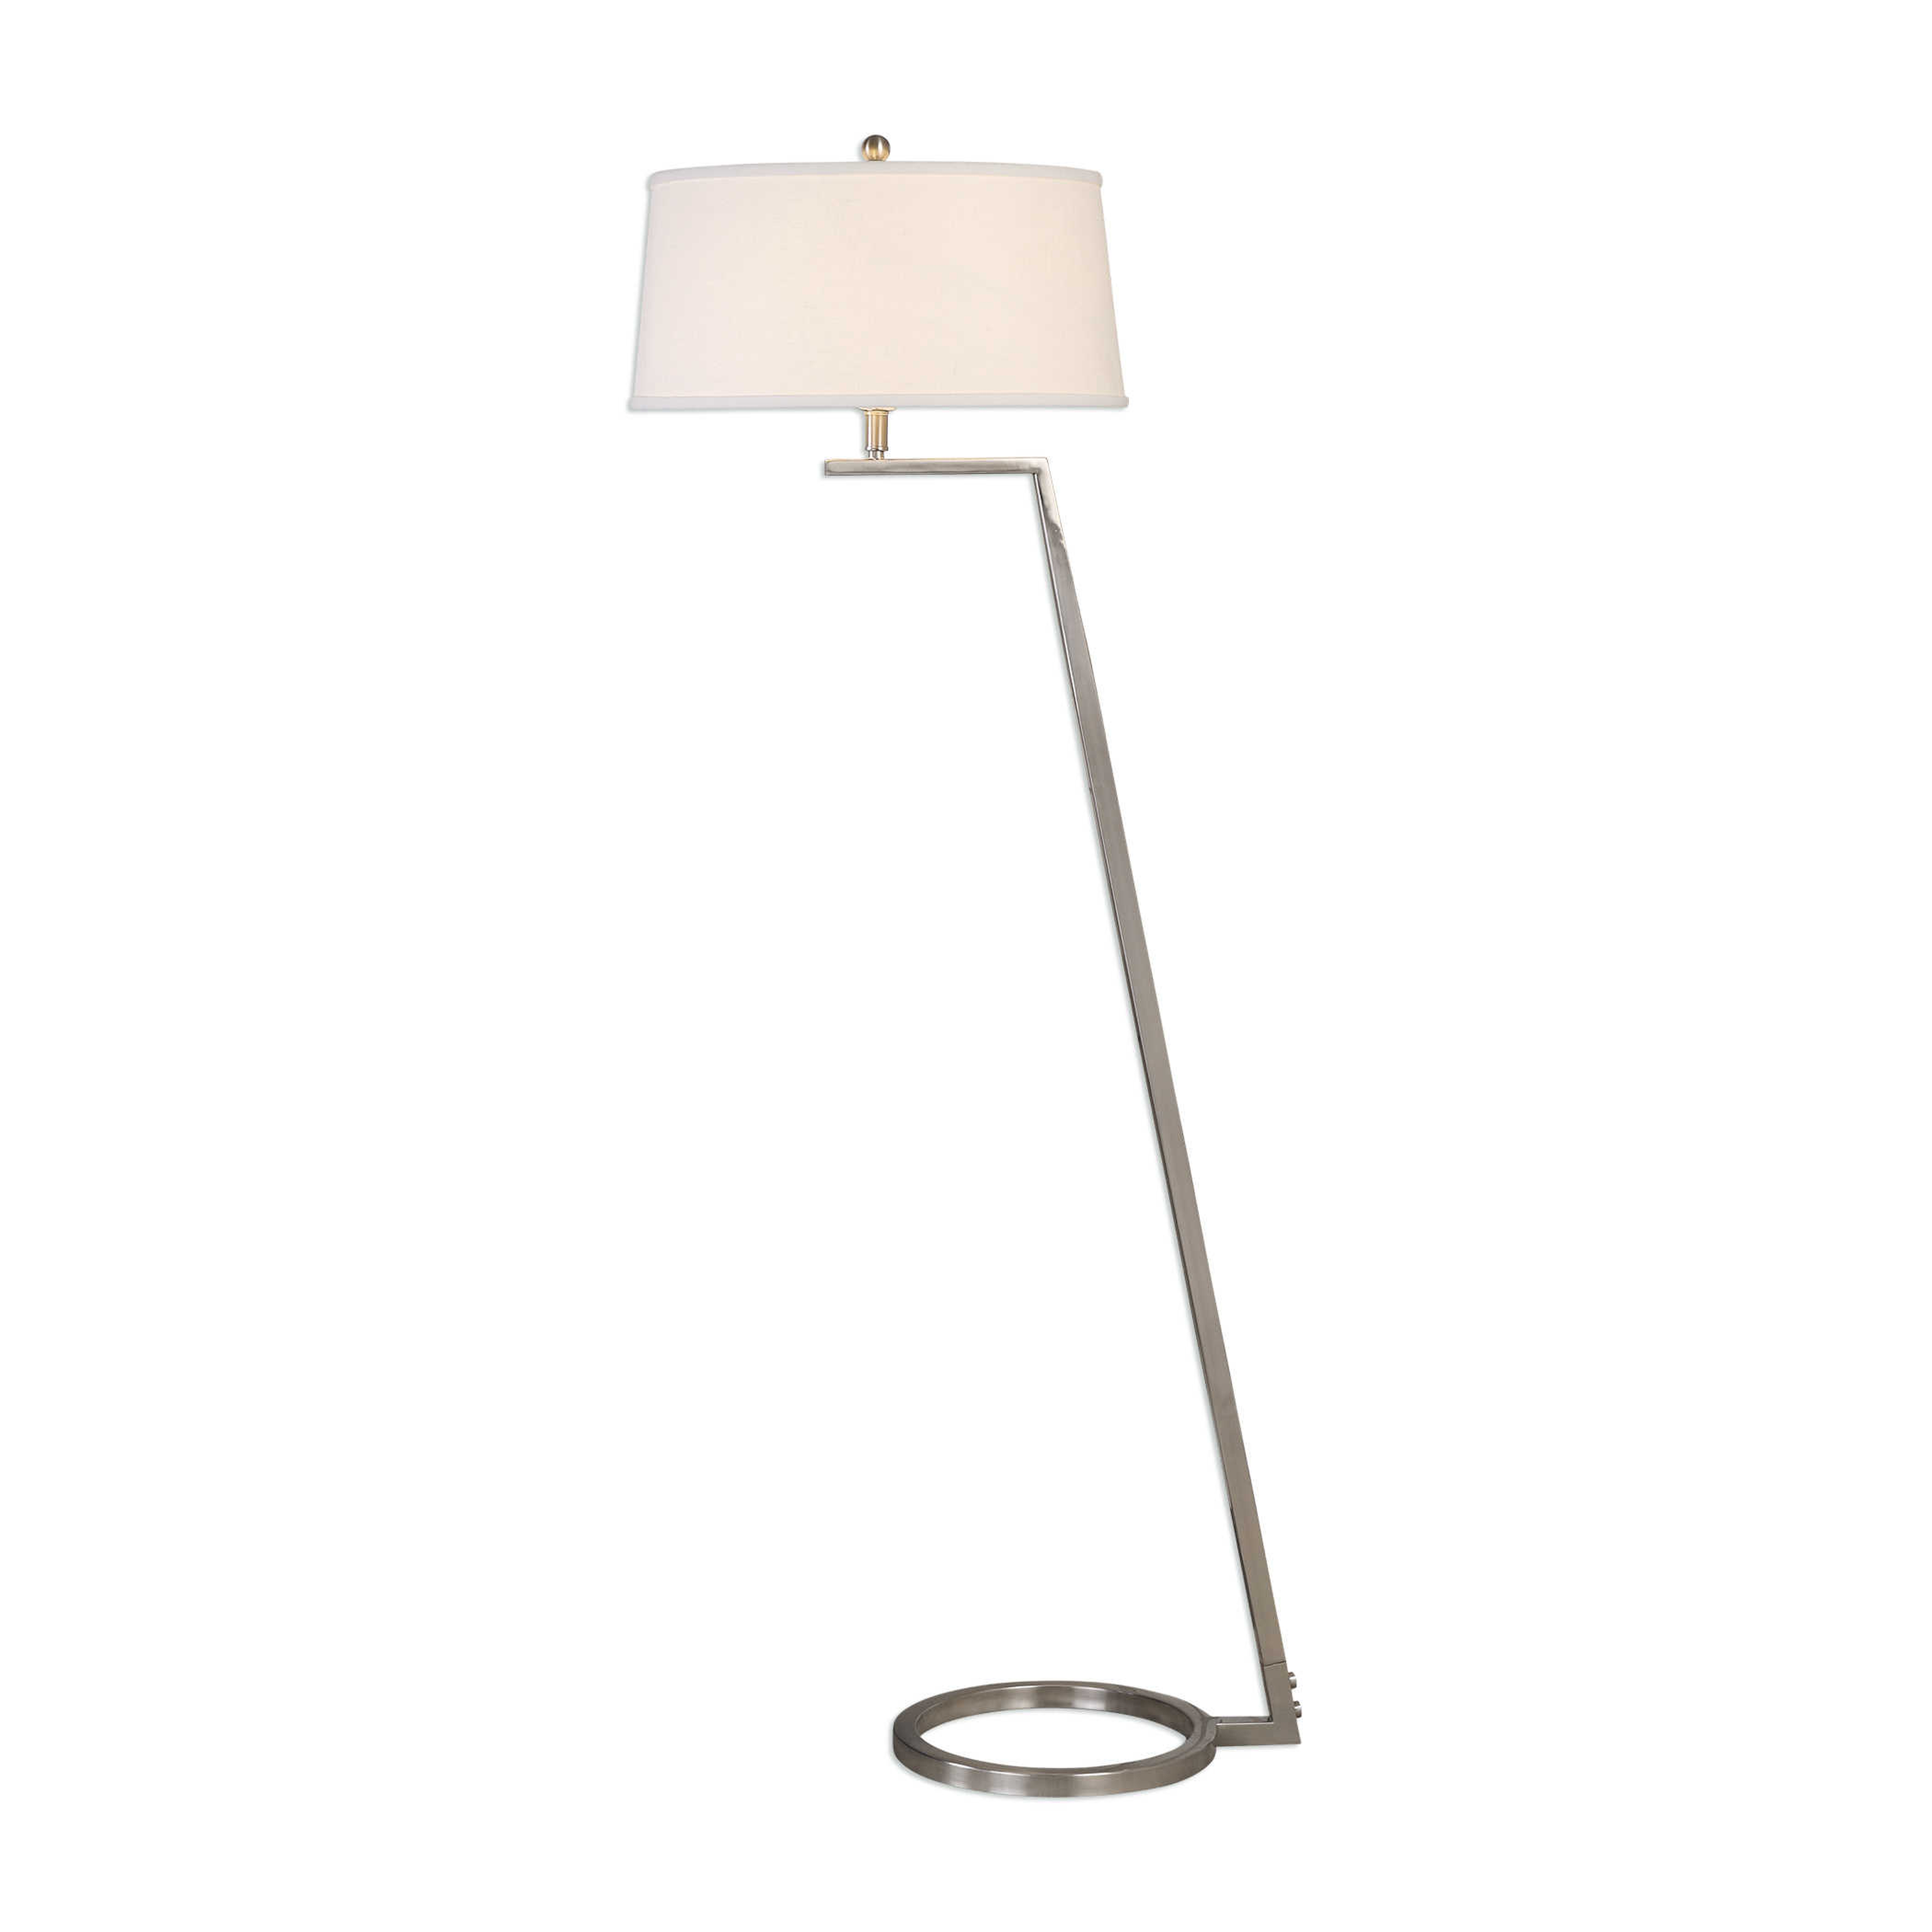 Ordino Modern Floor Lamp, Nickel, 63" - Hudsonhill Foundry